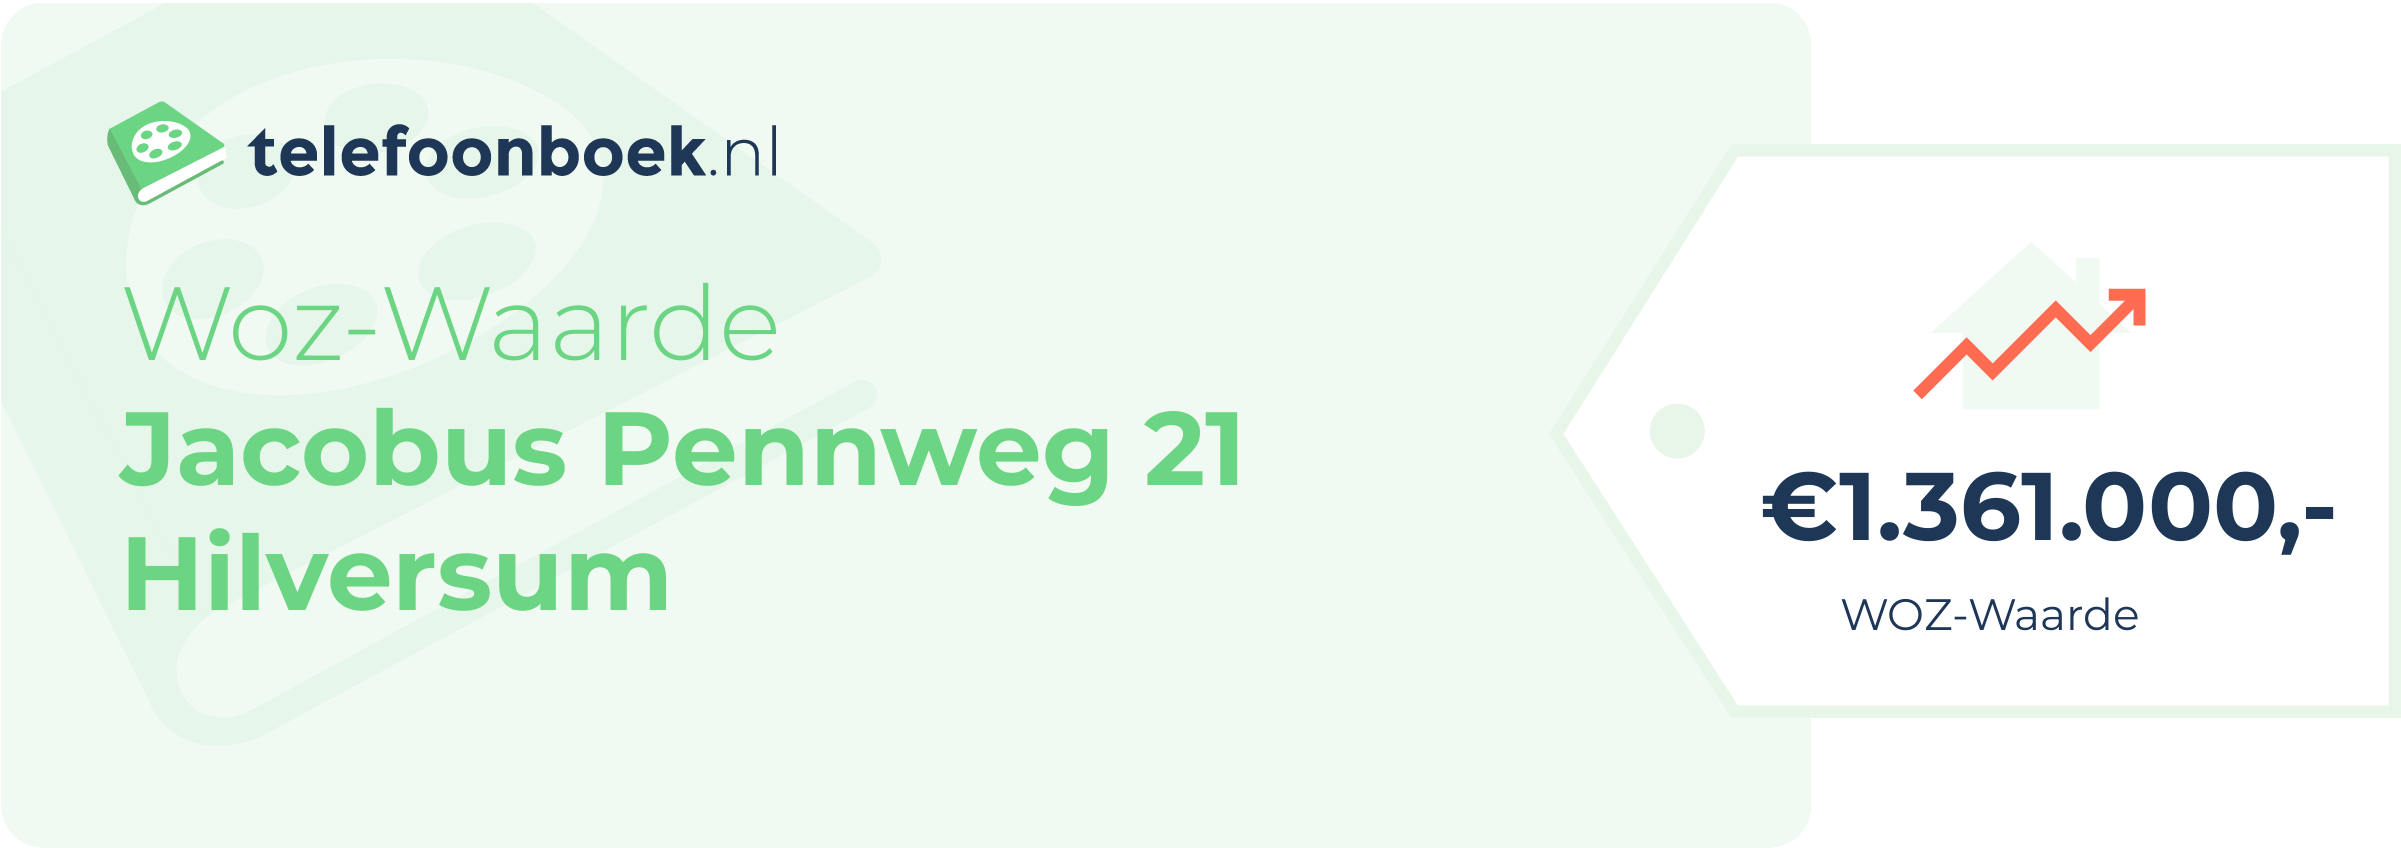 WOZ-waarde Jacobus Pennweg 21 Hilversum